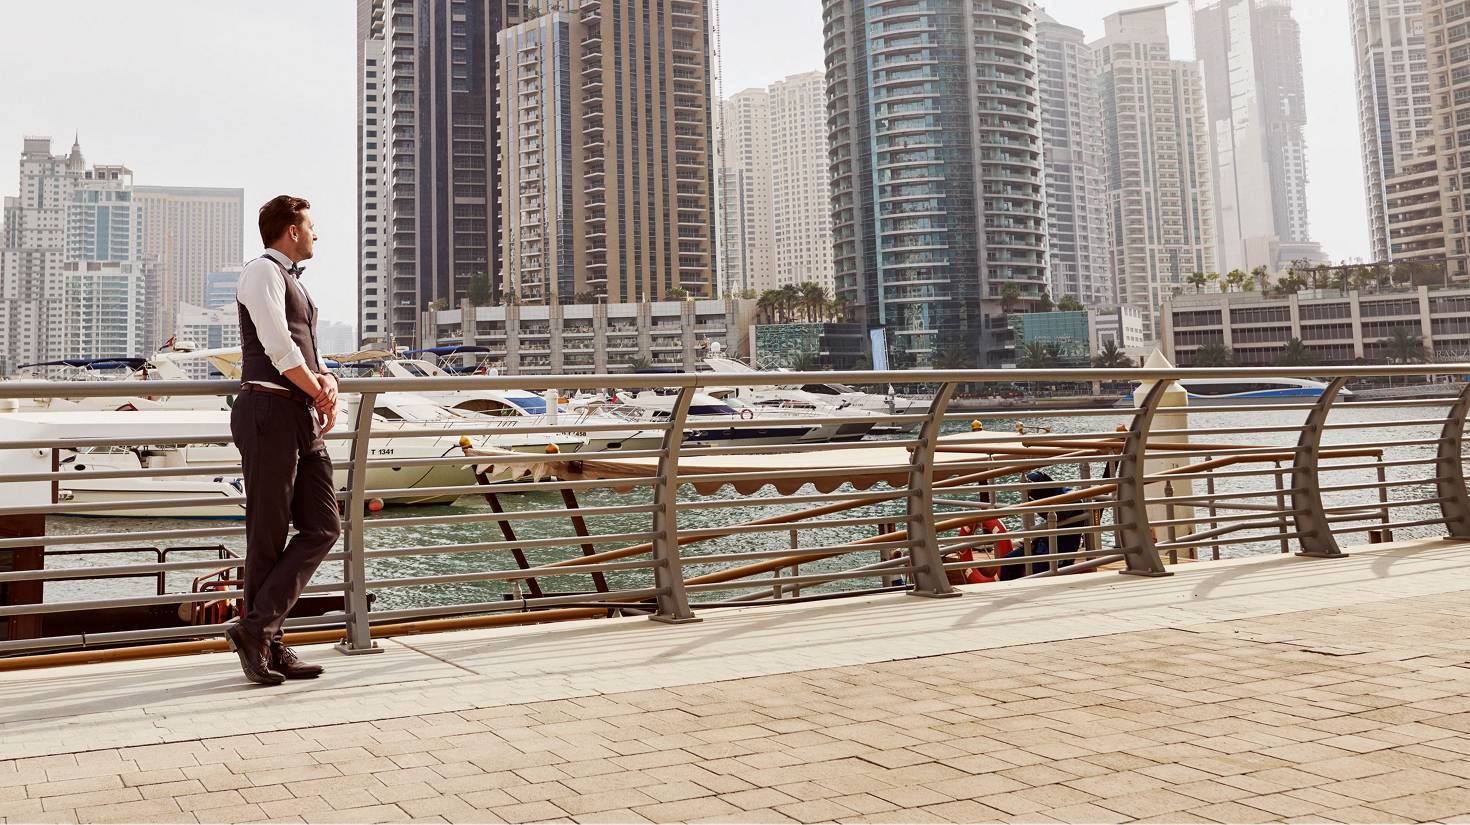 Dubai buildings unlock up to 80% energy savings with simple pump